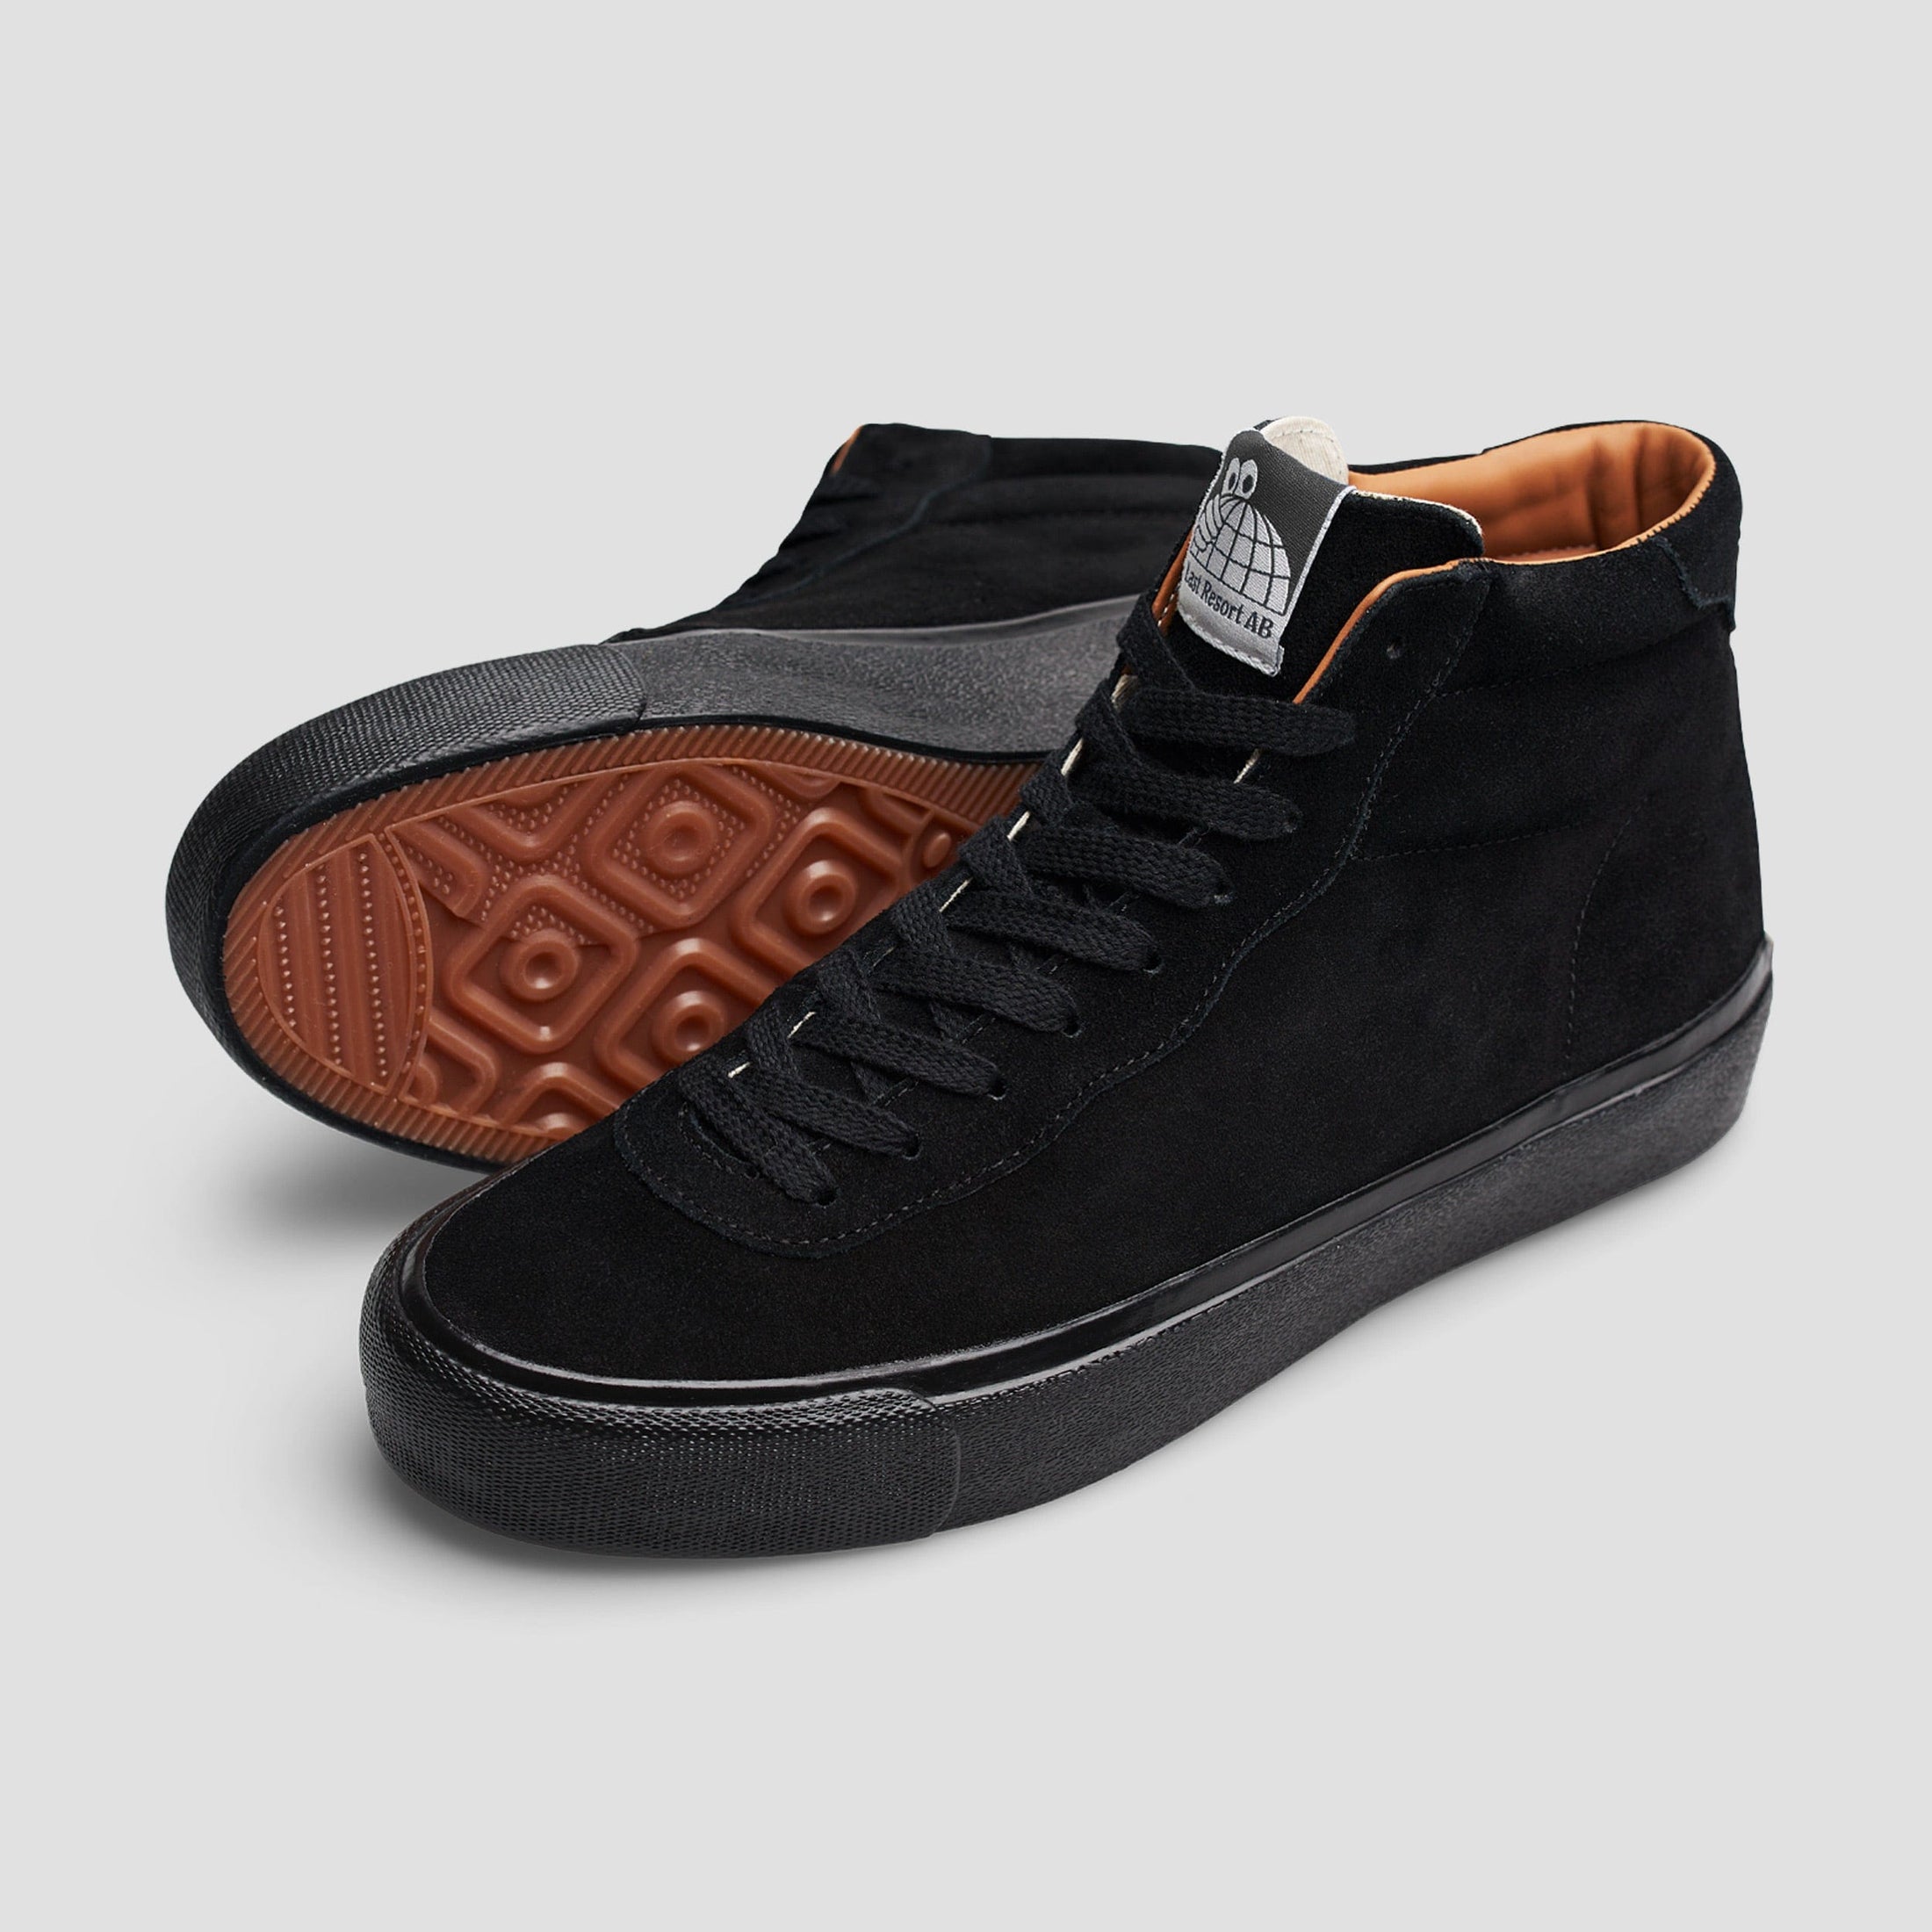 Last Resort AB VM001 Suede HI Skate Shoes Black / Black / Black